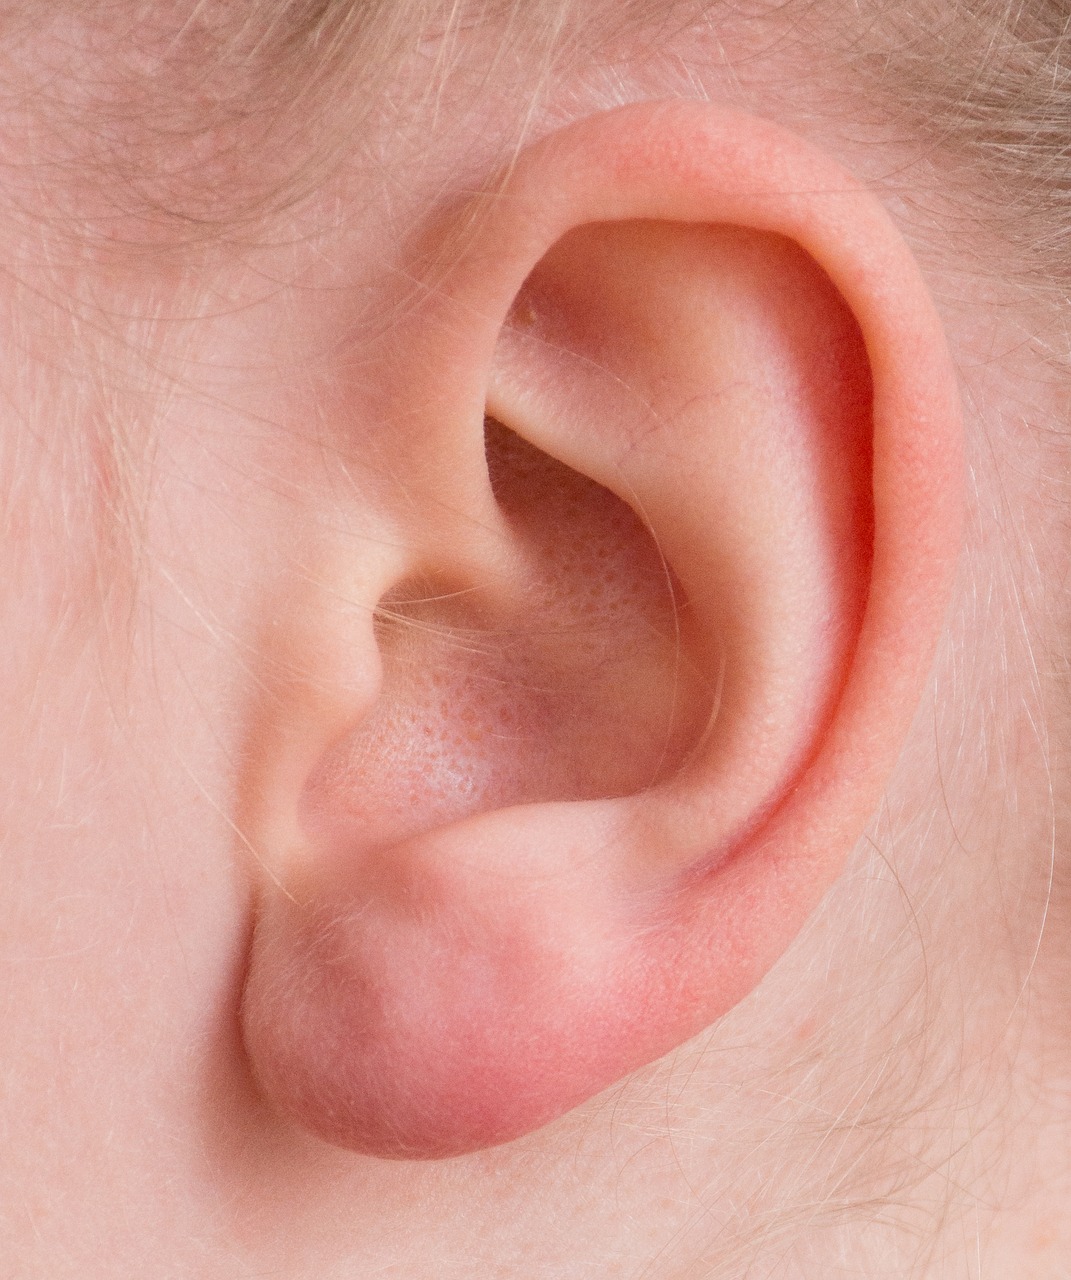 Verstopfte Ohren – Was tun? Tipps wie man Ohren richtig reinigen sollte